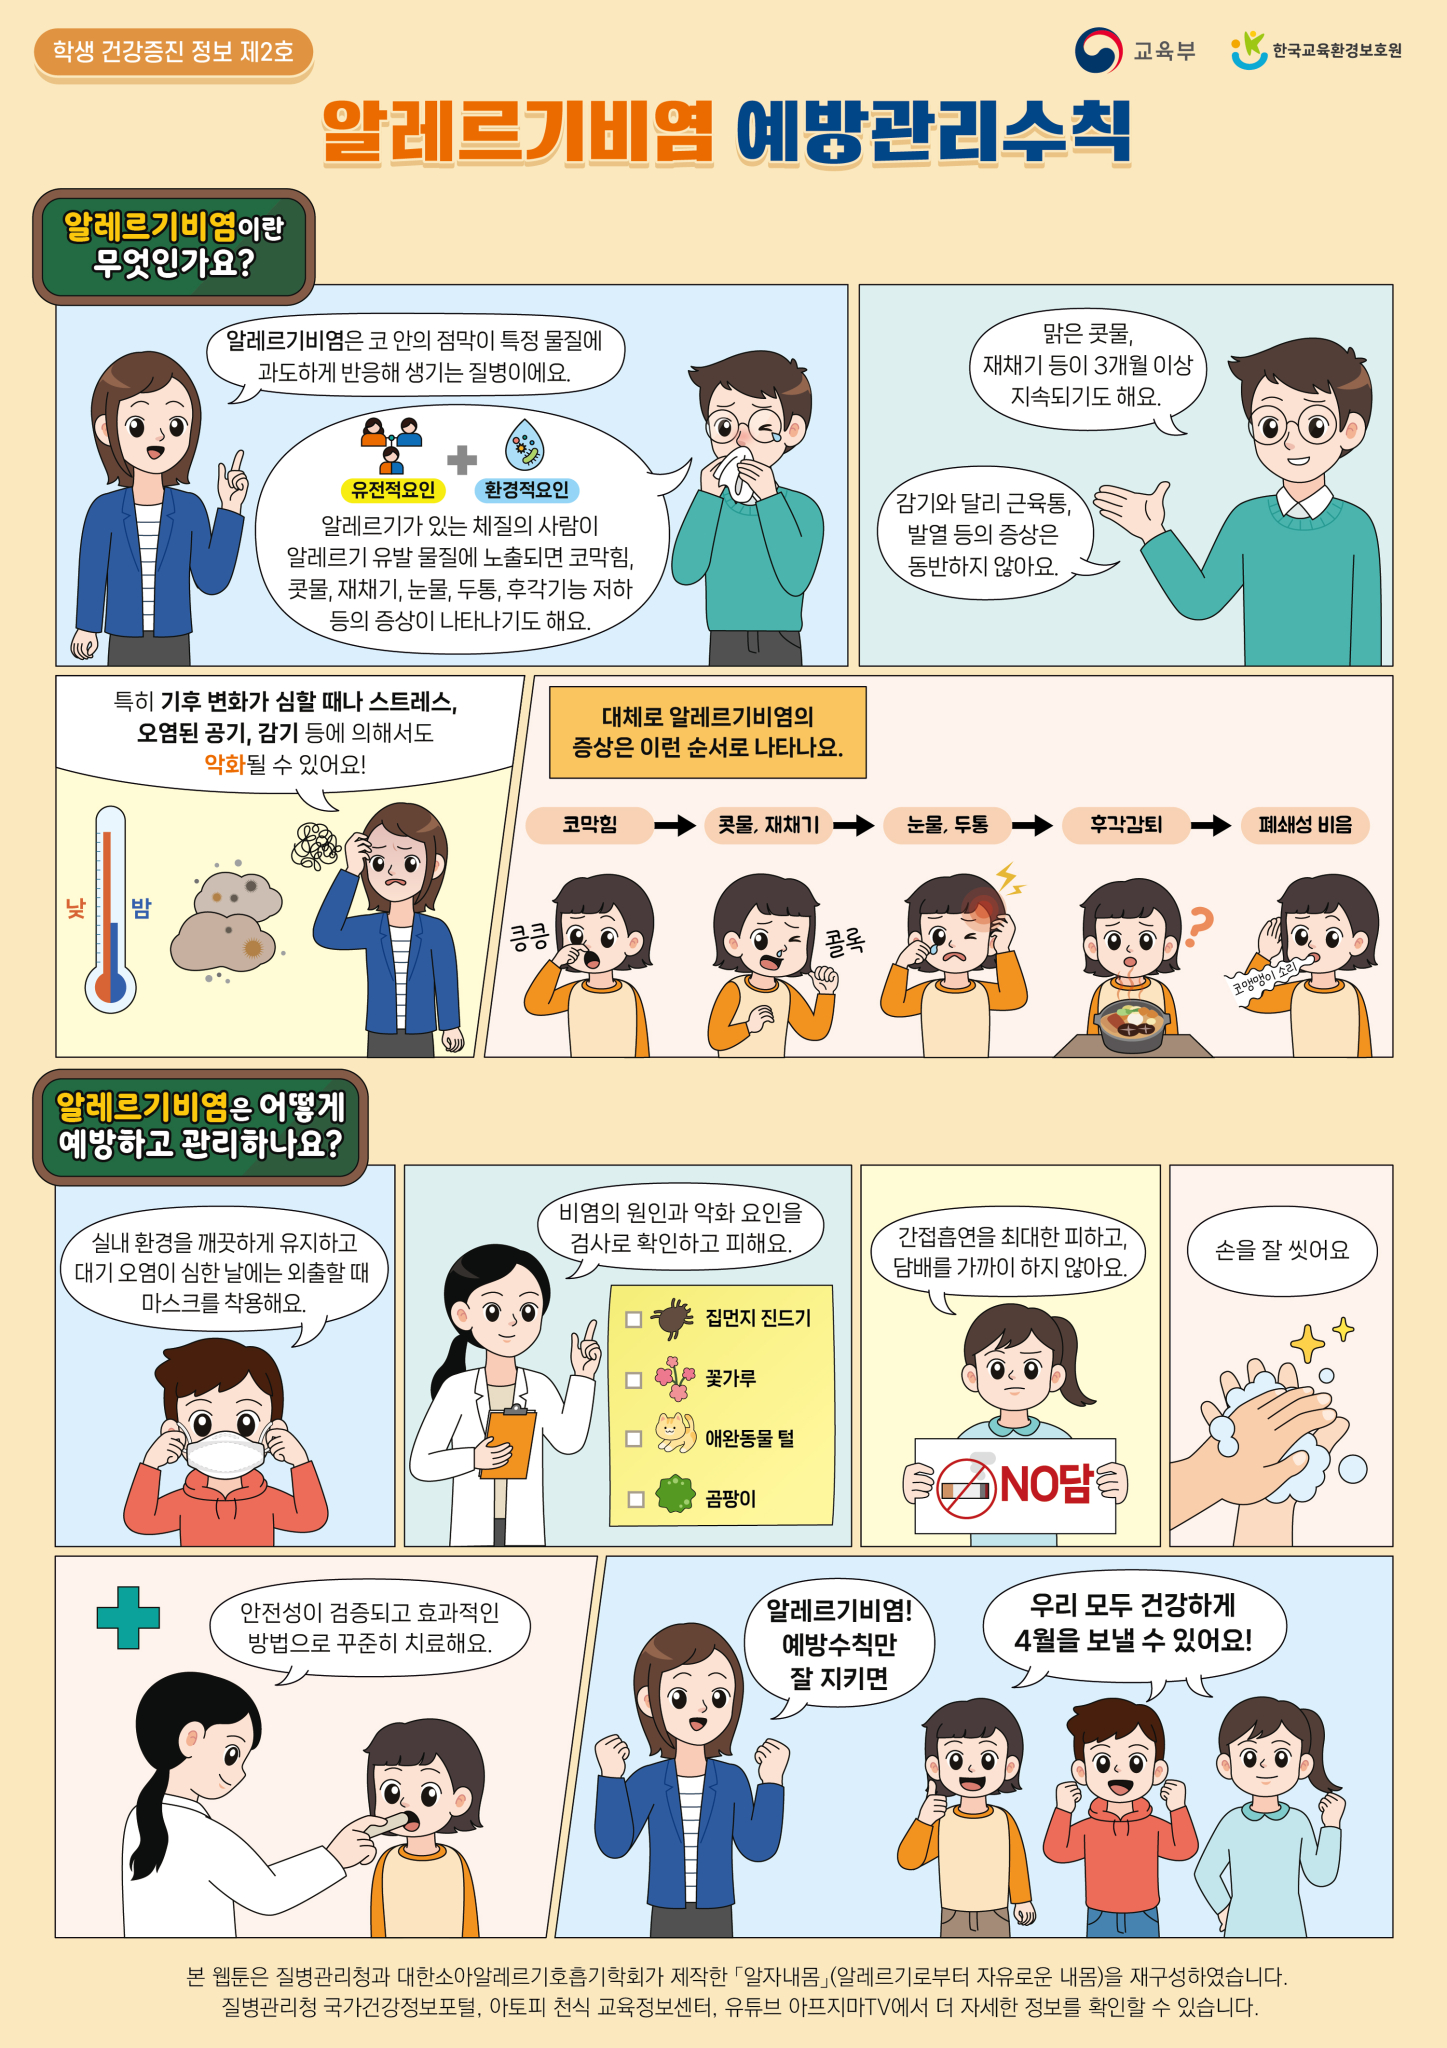 (4월)_알레르기비염 예방관리수칙